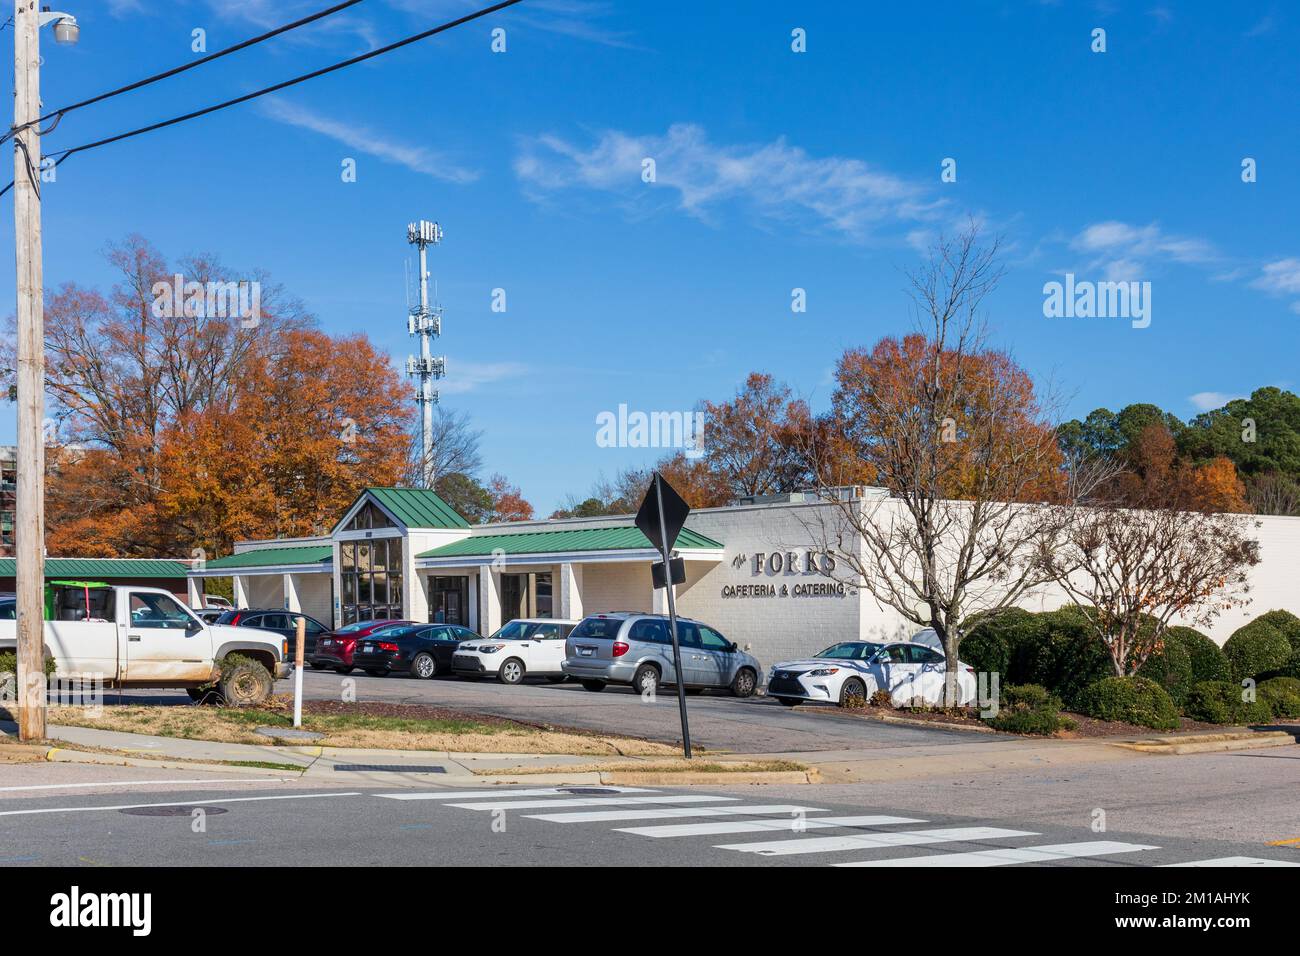 1 dic 2022-WAKE FOREST, NC, USA: The Forks Cafeteria & Catering, edificio e parcheggio al sole, giorno d'autunno. Foto Stock